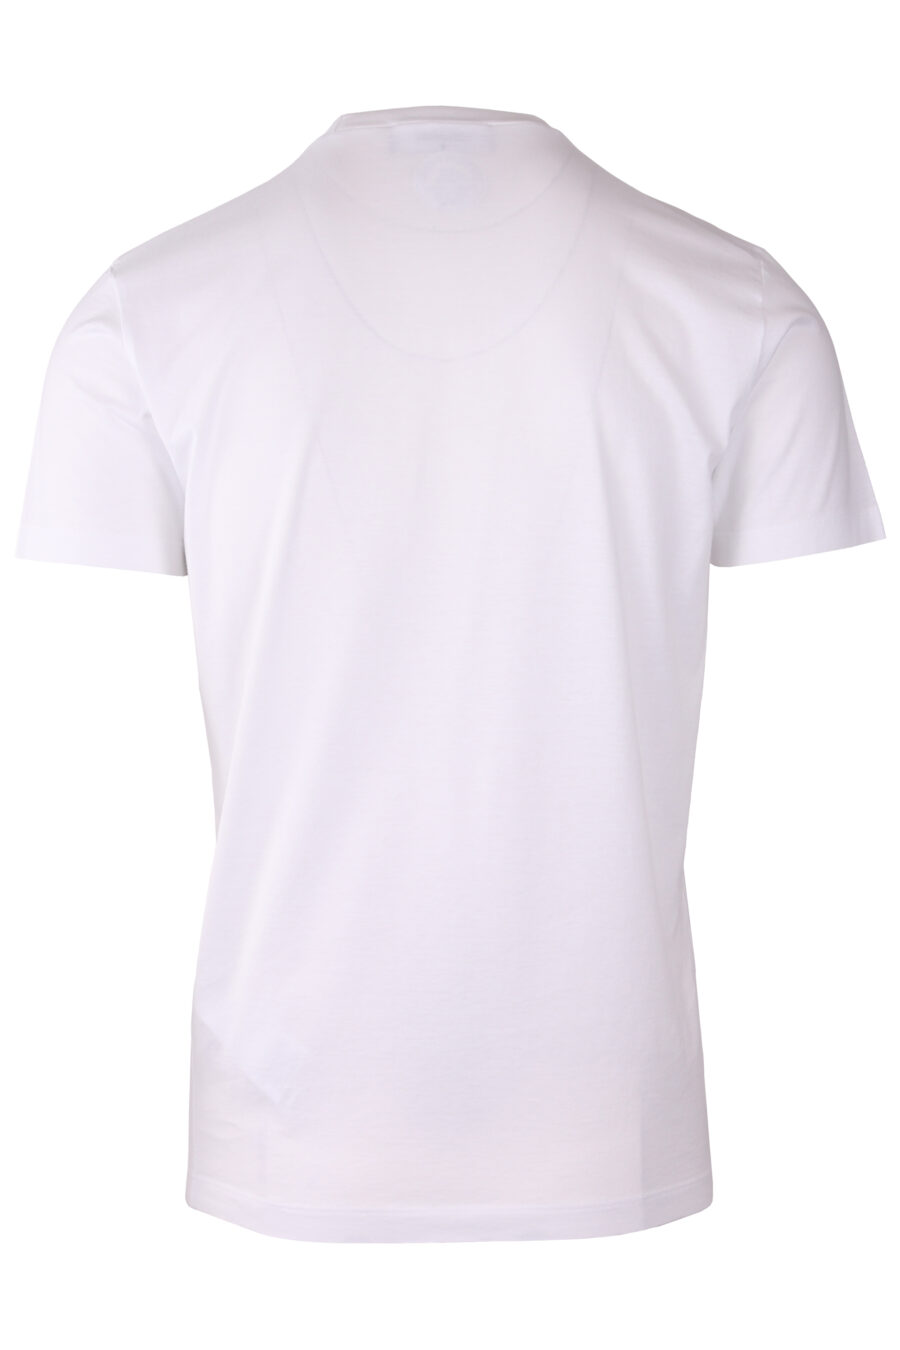 Camiseta blanca con maxilogo texto "dean and dan caten" - IMG 8980